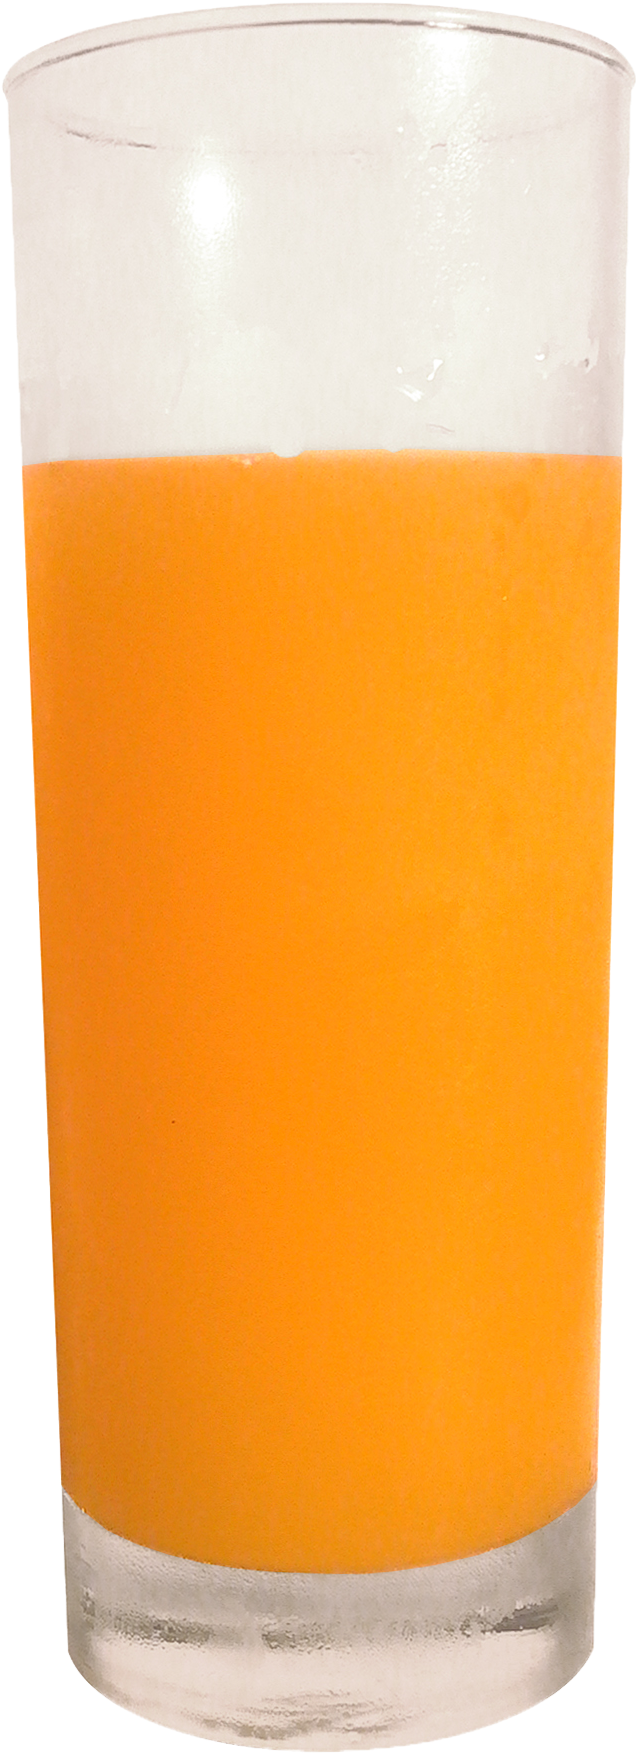 Orange Juice Tomato Juice Soft Drink Harvey Wallbanger - Orangejuice Glass (858x1899)